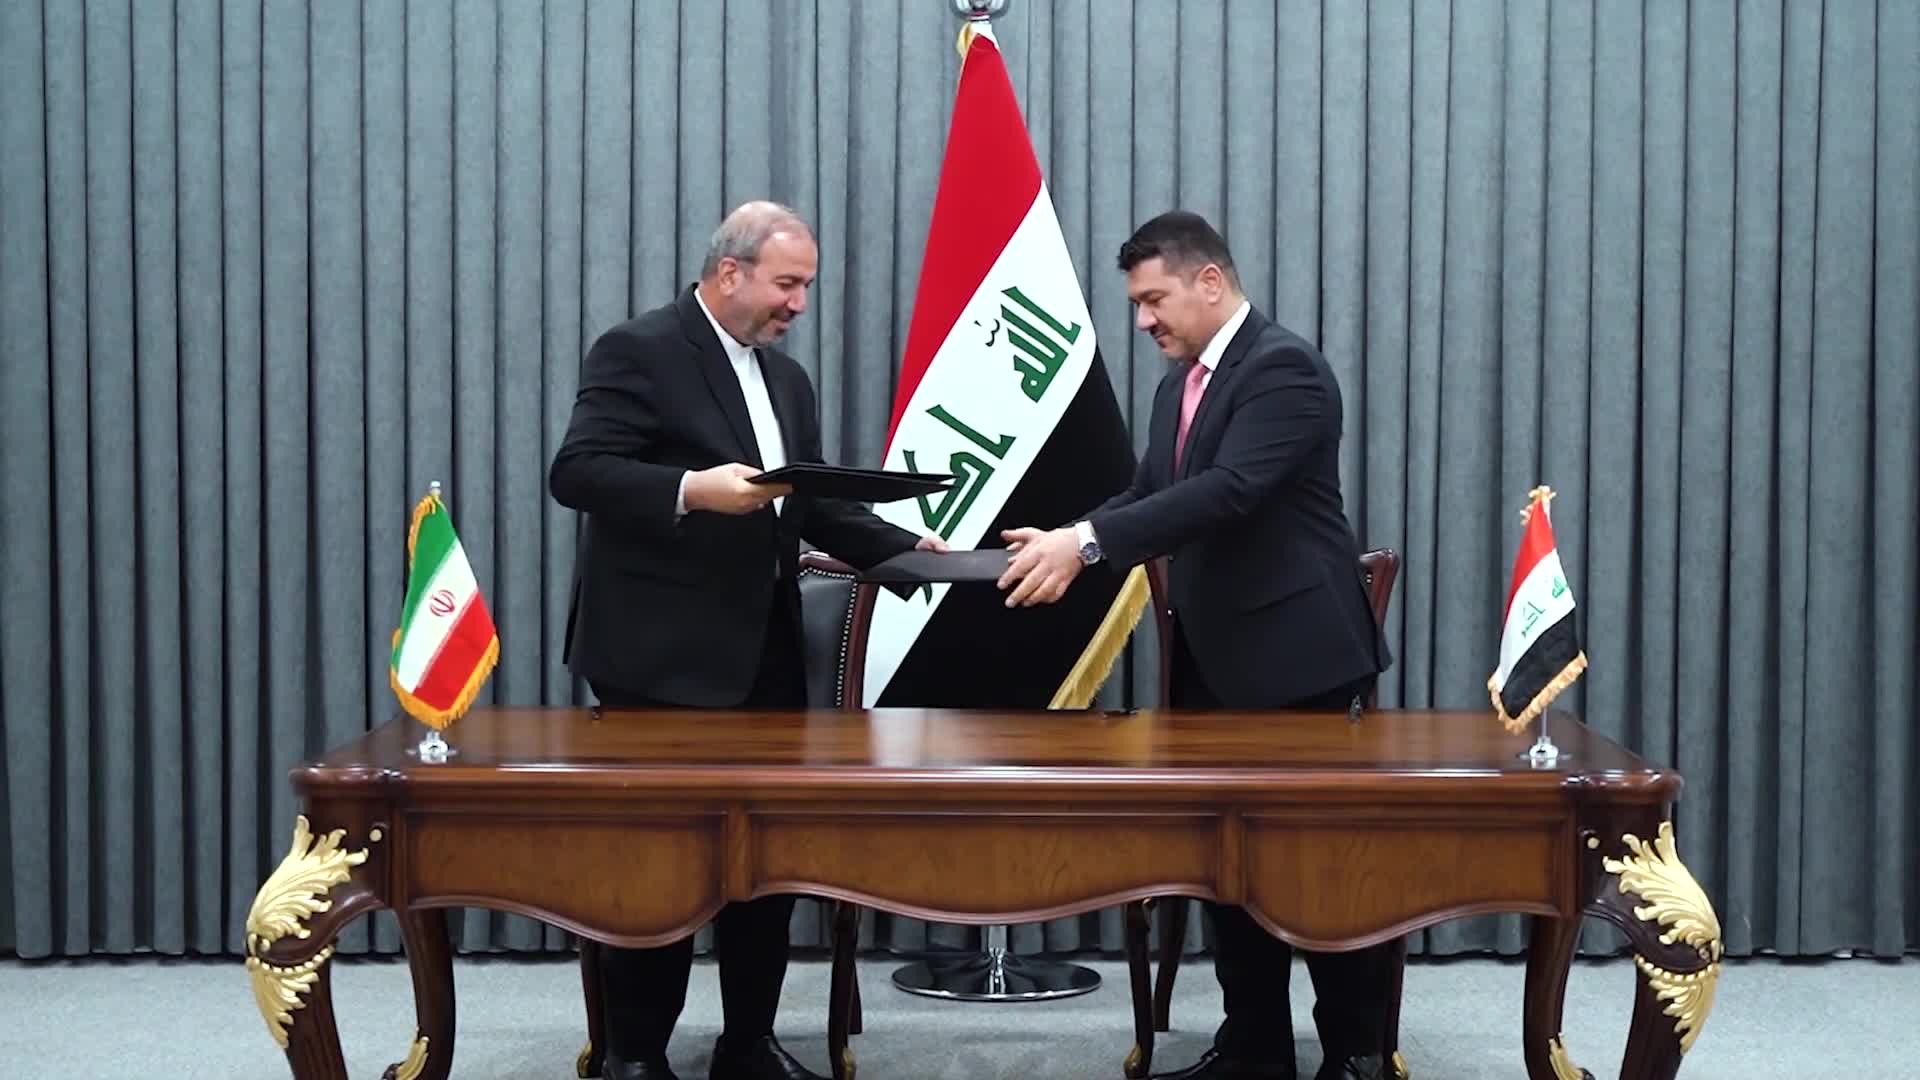 العراق توقيع اتفاق بين بغداد وطهران لمقايضة الغاز المستورد بالنفط الخام العراقي - snapshot 46.2